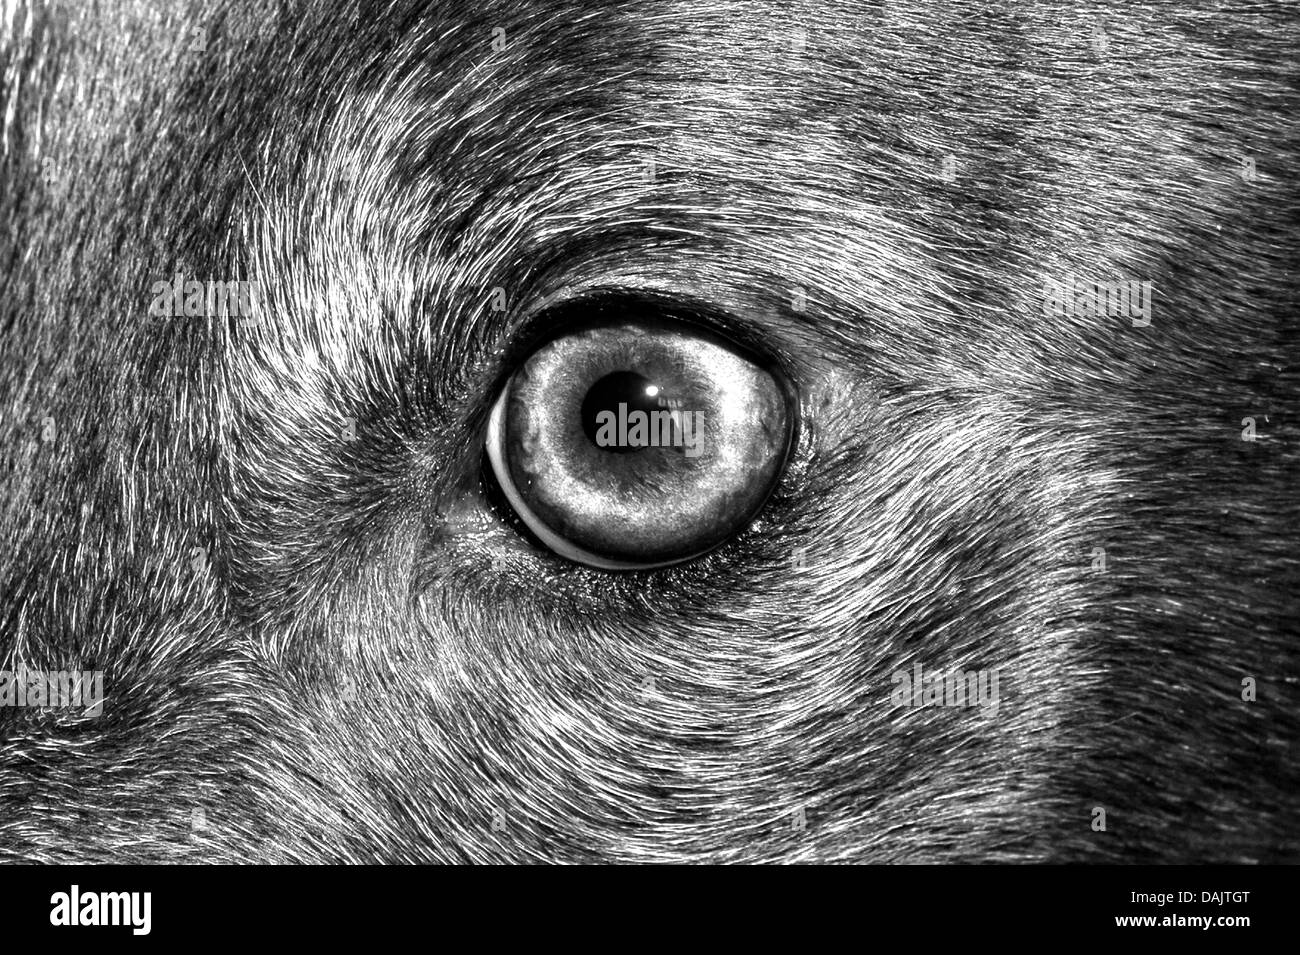 Schuss des Auges von einem Windhund zu schließen.  Bild wurde auf B&W bearbeitet. Stockfoto